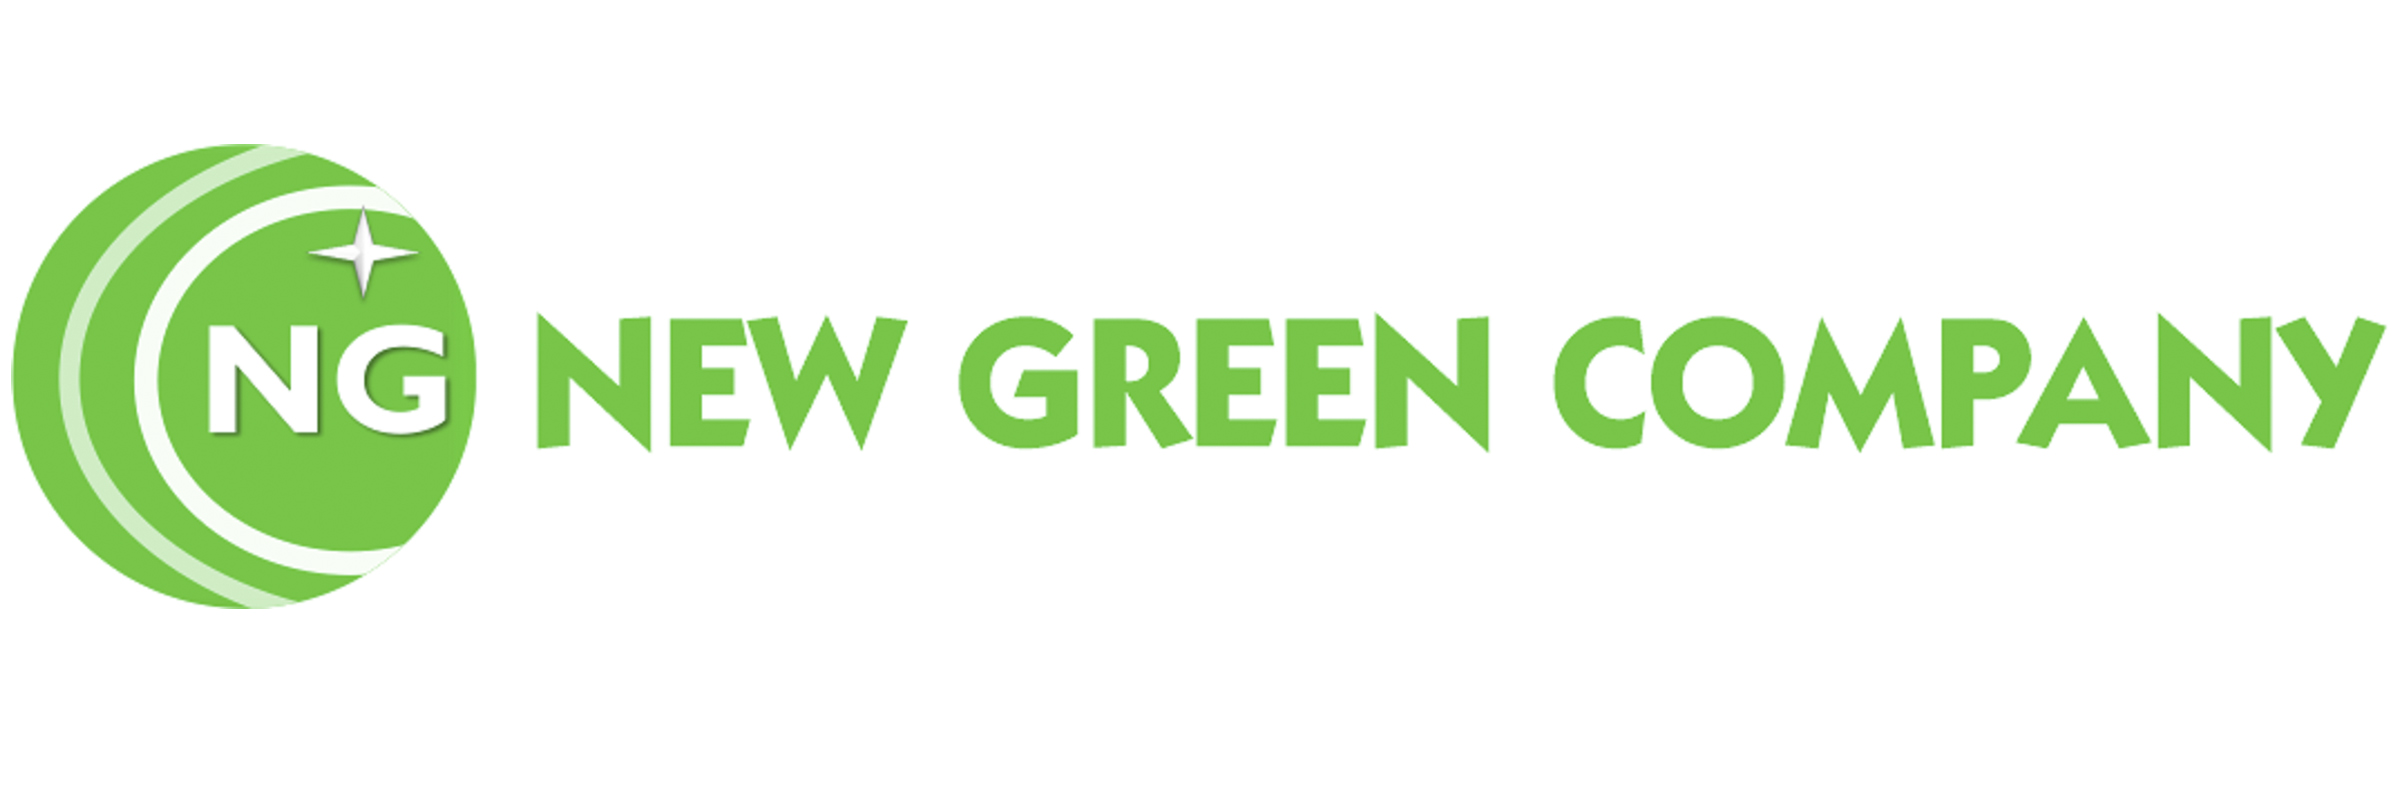 New Green Company